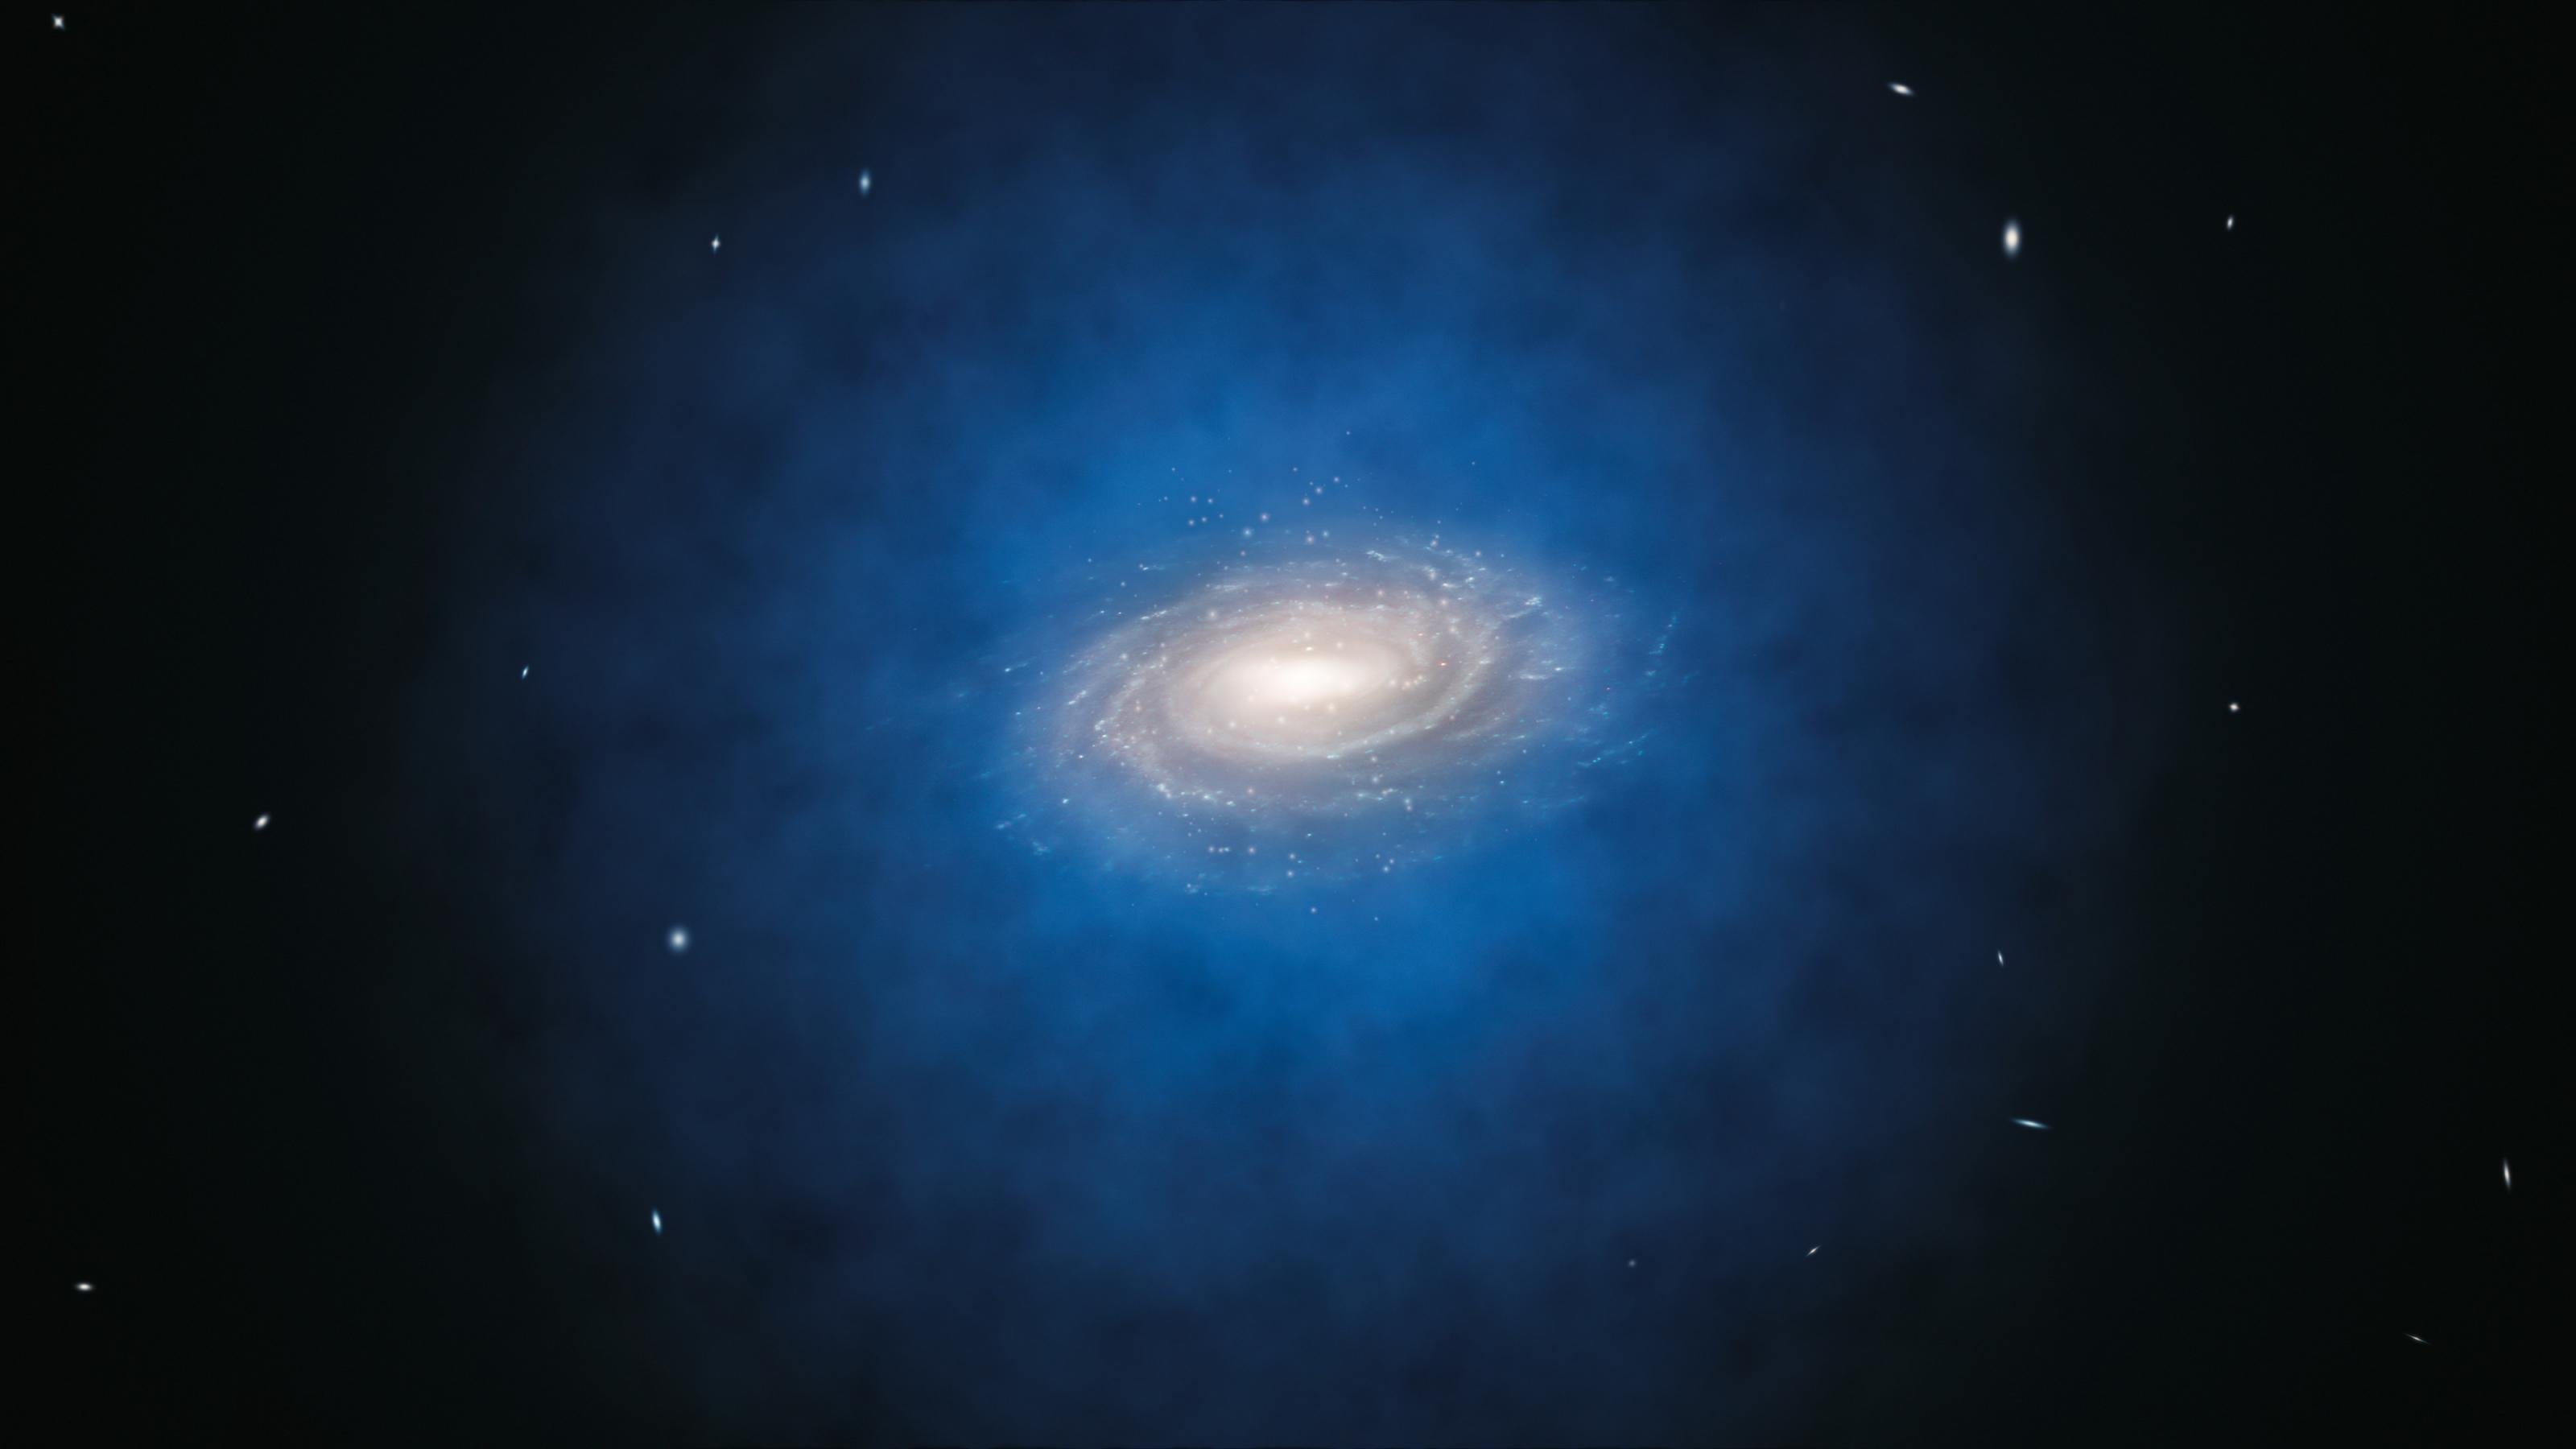 Grafik: Eine Galaxie, die sich mitten in einer blauen diffusen Wolke befindet.